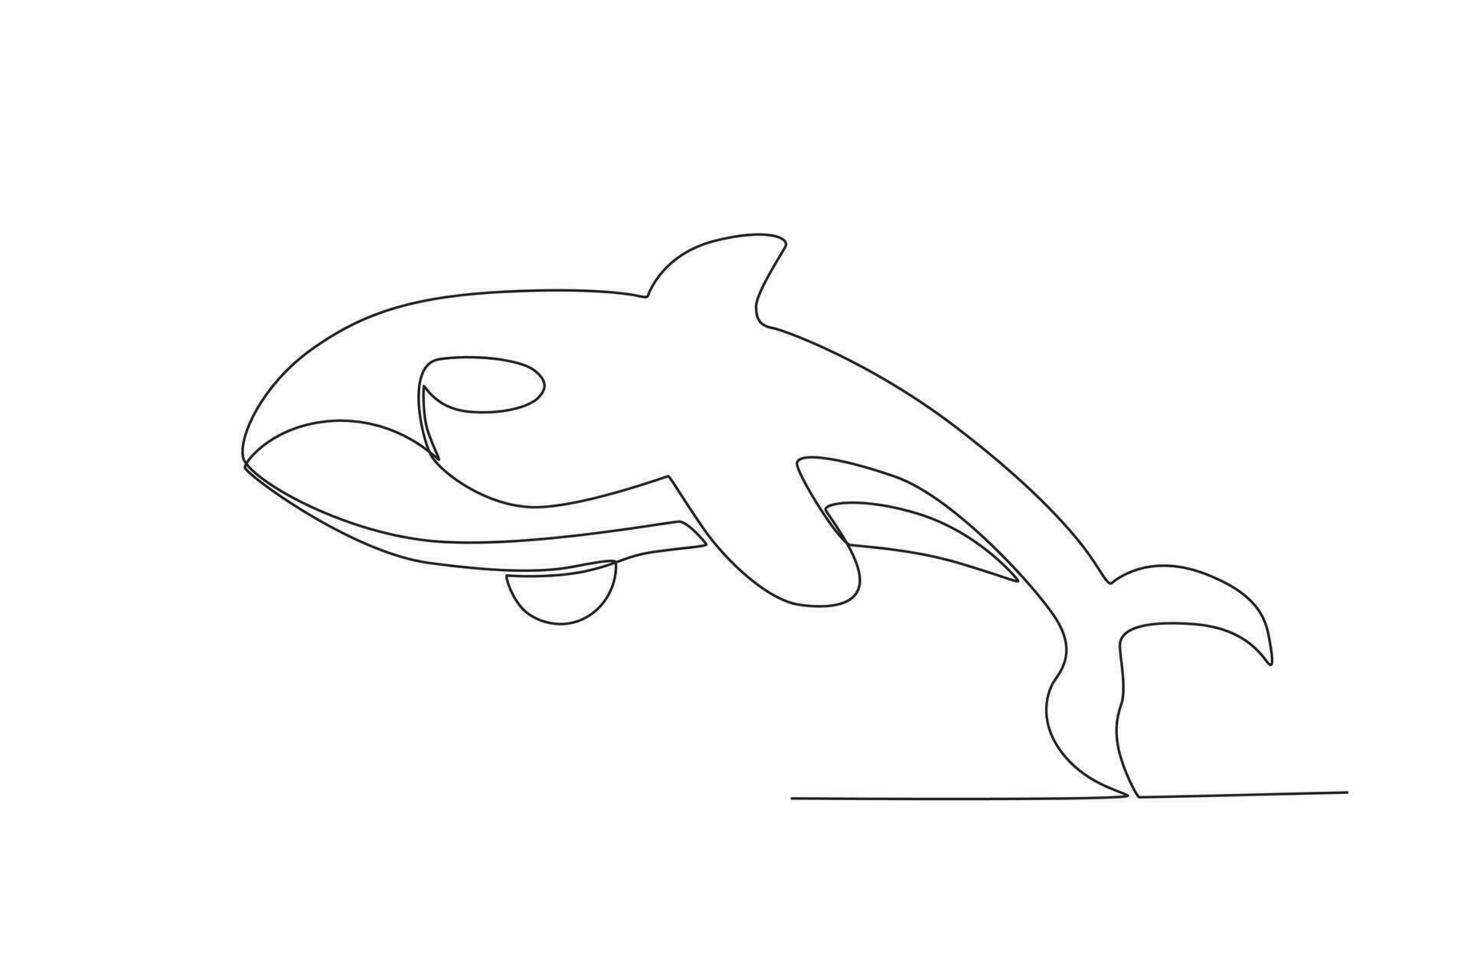 Célibataire un ligne dessin de une forcer baleine. continu ligne dessiner conception graphique vecteur illustration.